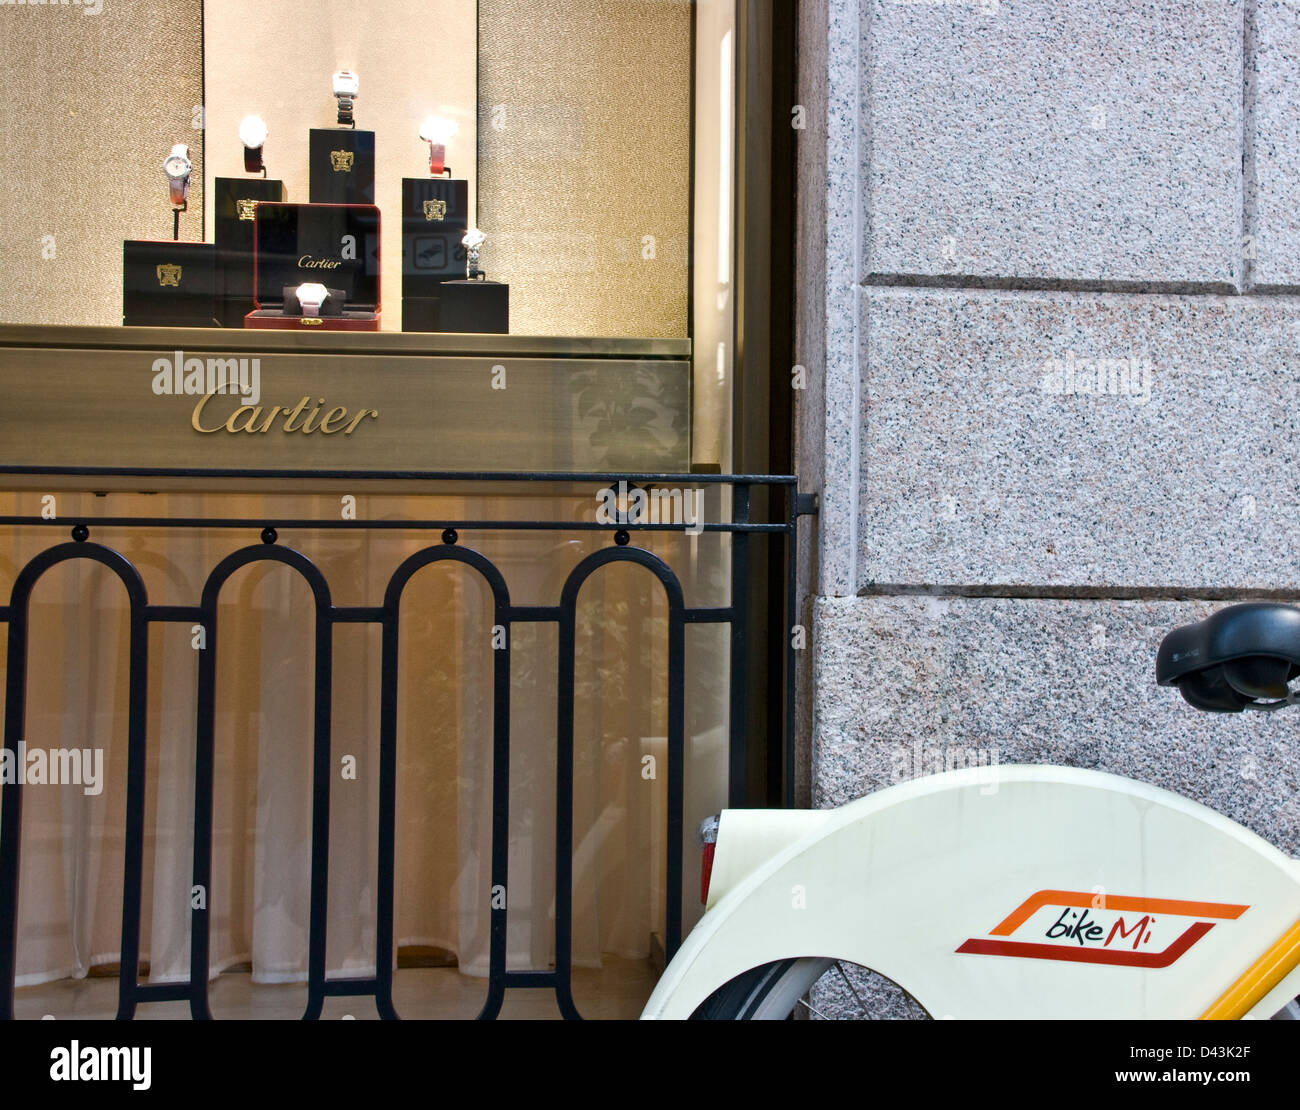 Bike Mi noleggio bici al di fuori di Cartier designer di lusso watch store milano lombardia italia Europa Foto Stock